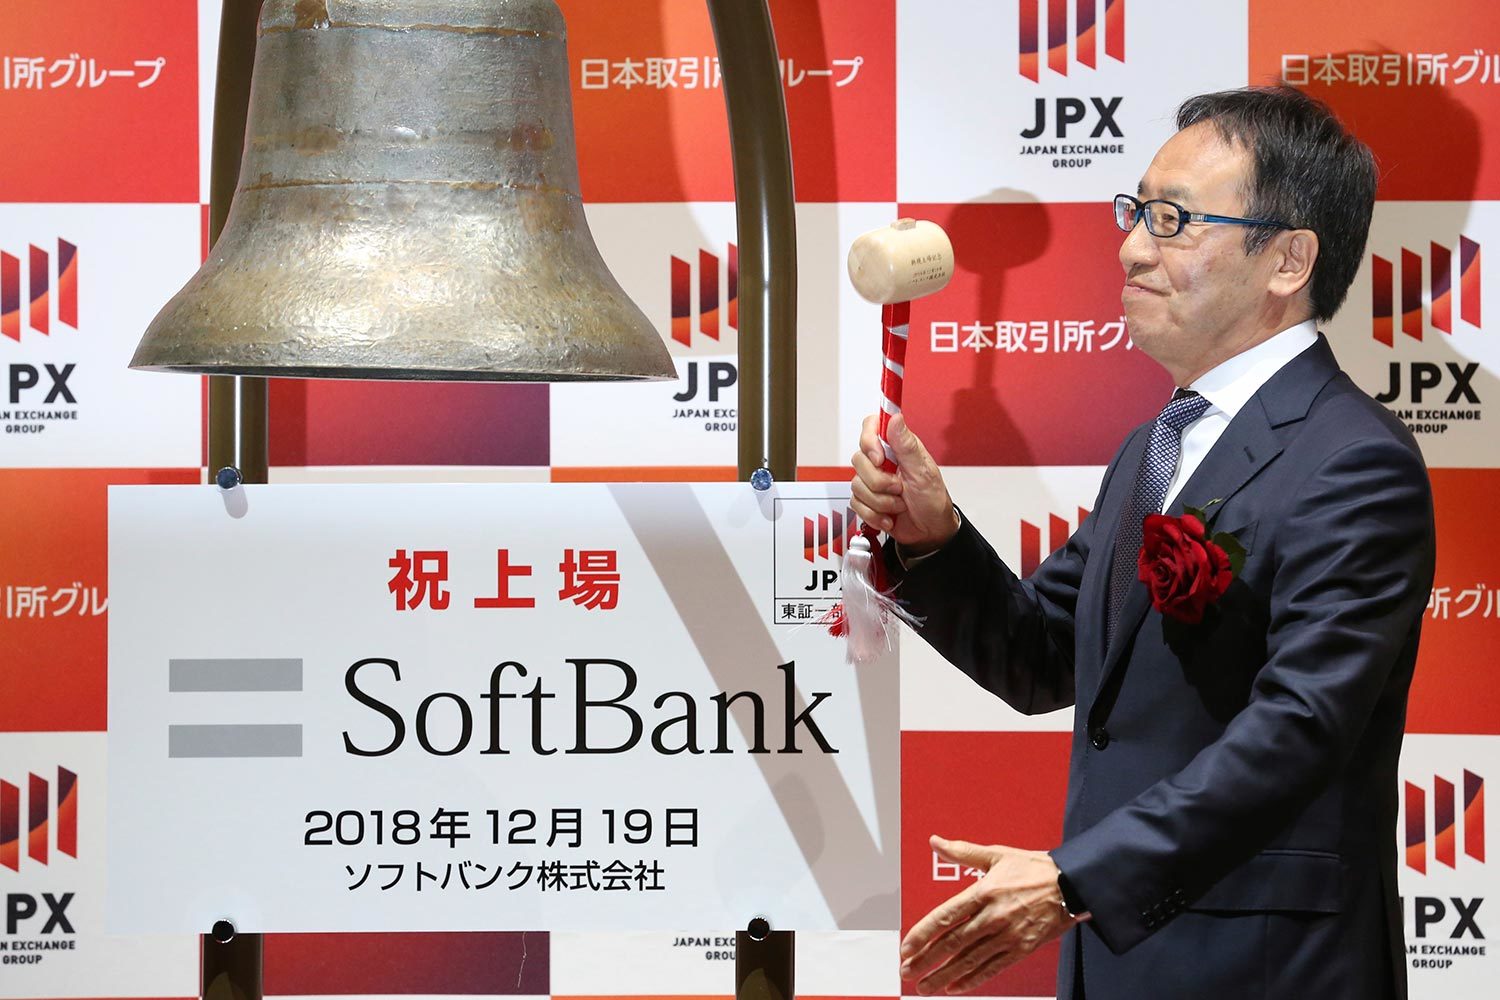 Softbank (на фото – СЕО компании Кену Мияучи (Ken Miyauchi) на бирже в Токио перед IPO) – $21,14 млрд, 2018 г.